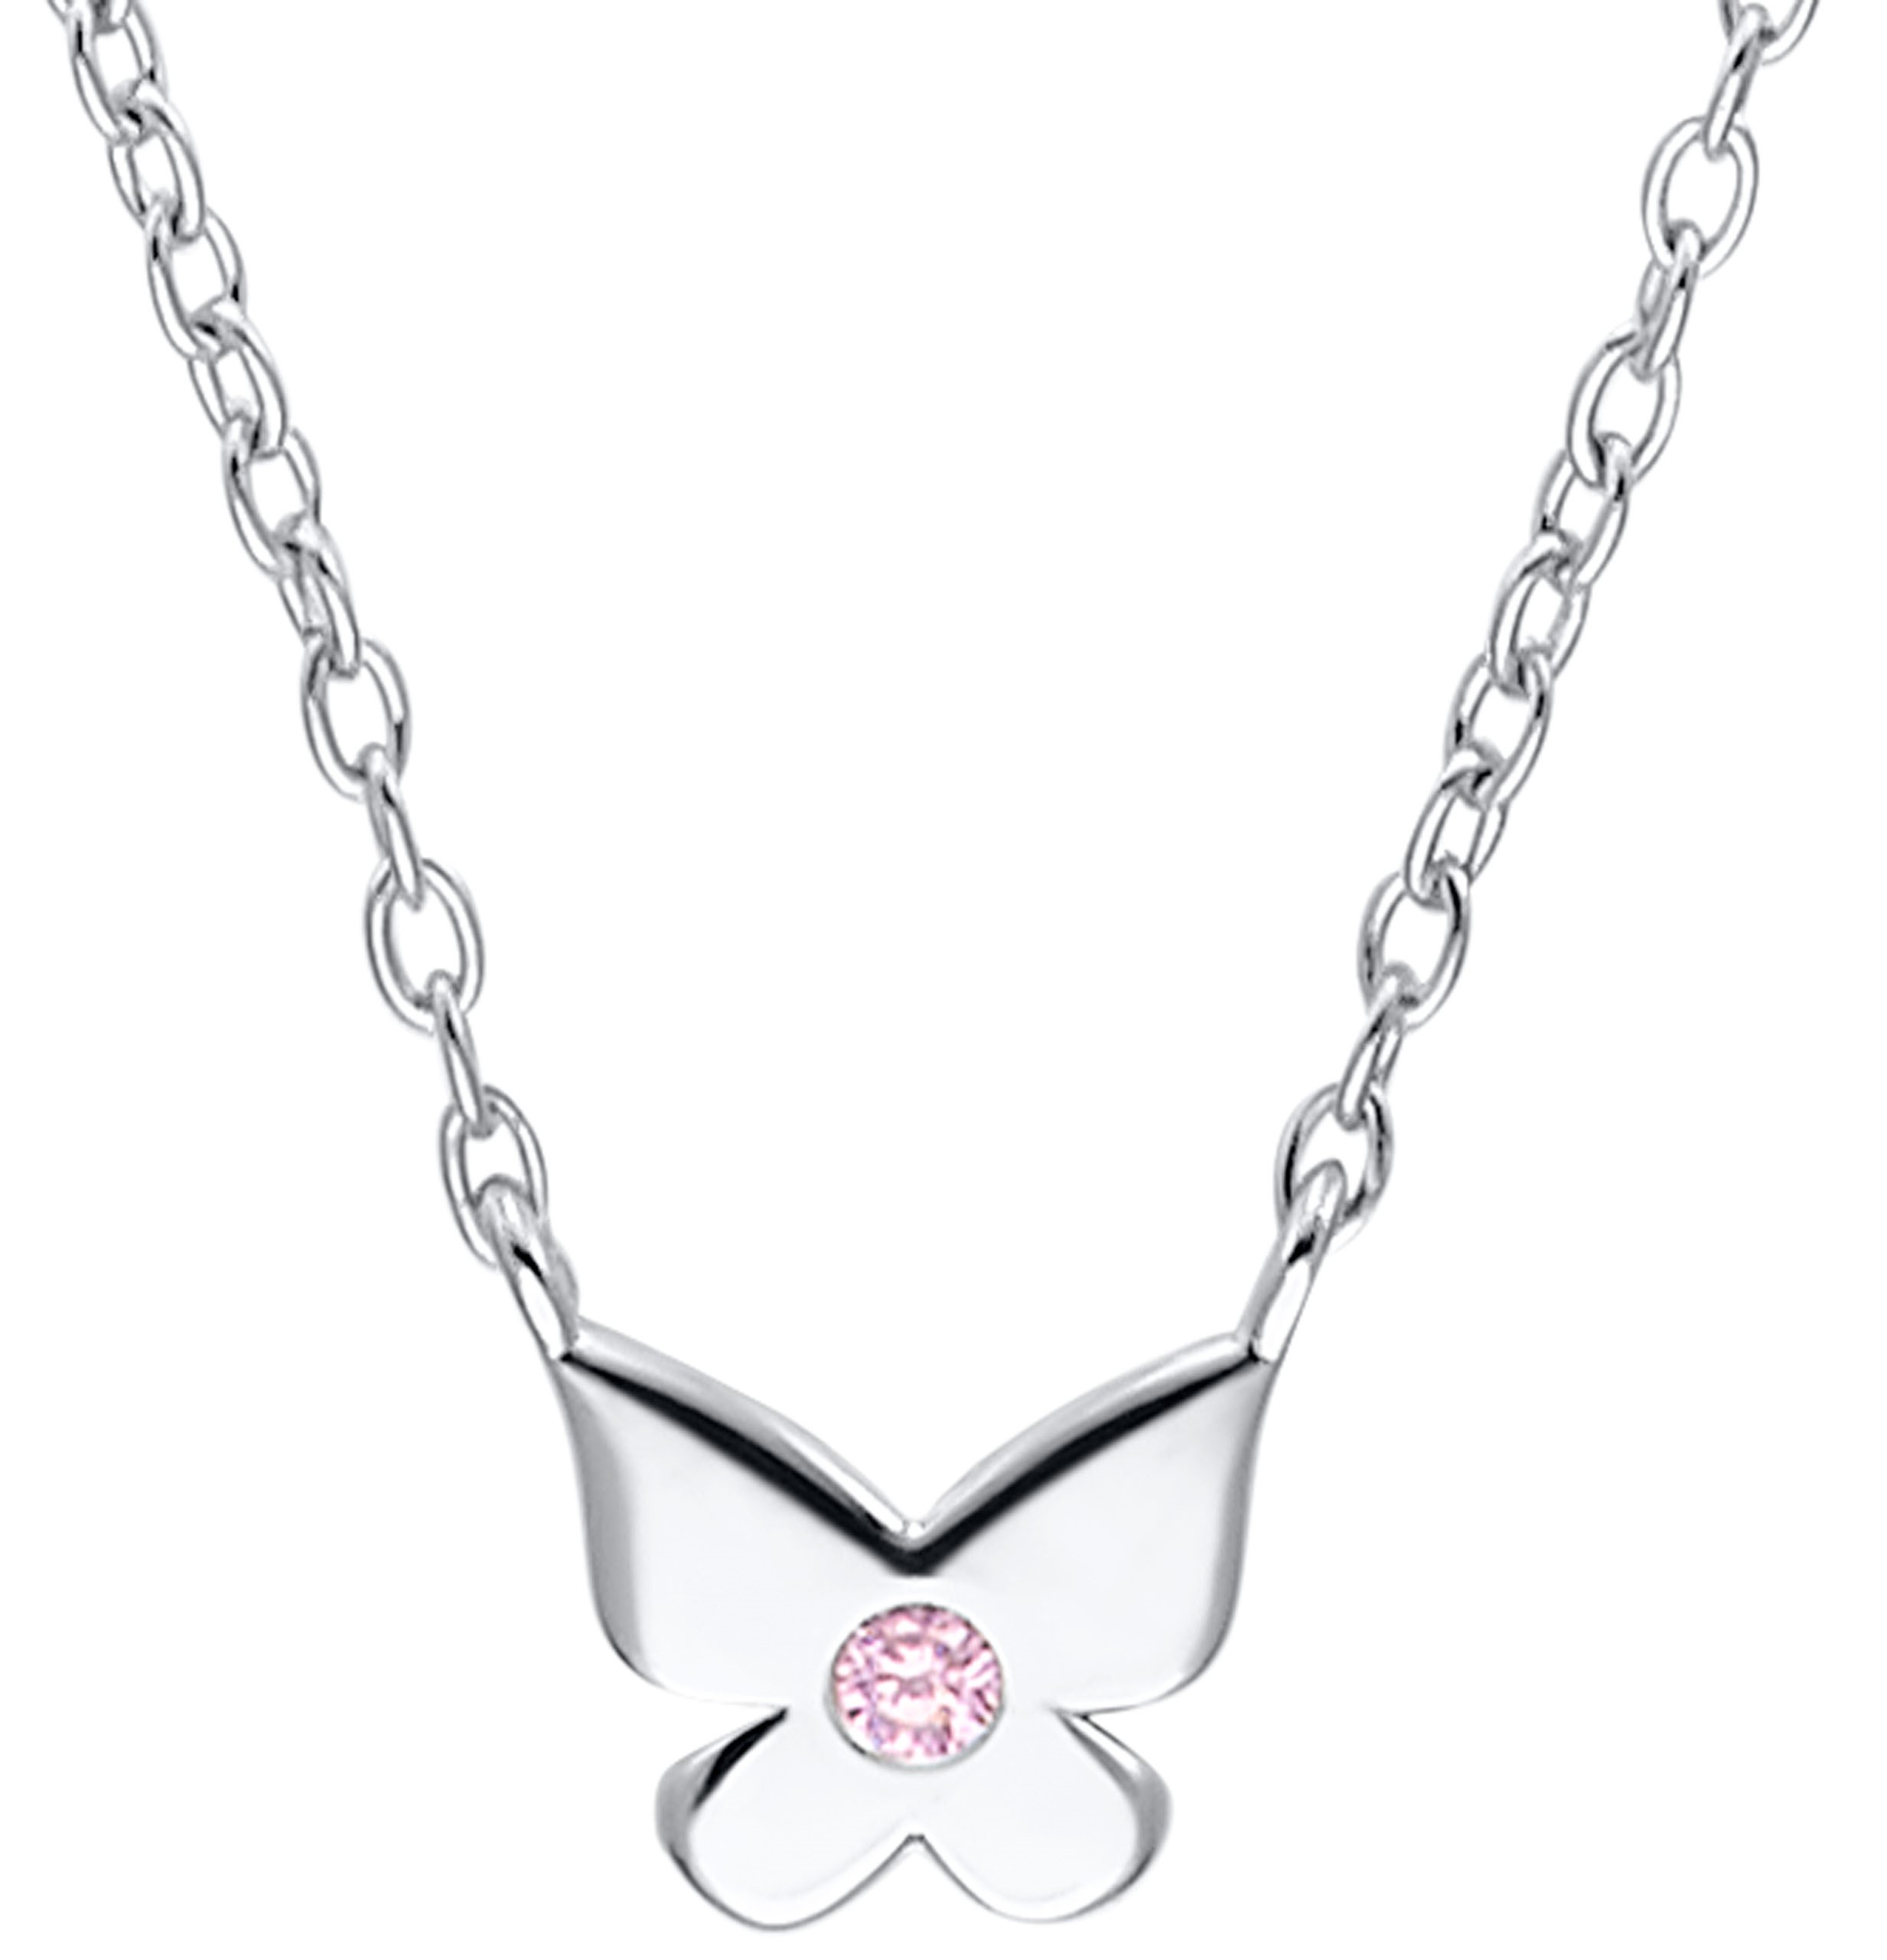 Lillifee Halskette 2036037 Silber 925/- mit Anhänger Schmetterling Zirkonia rosa